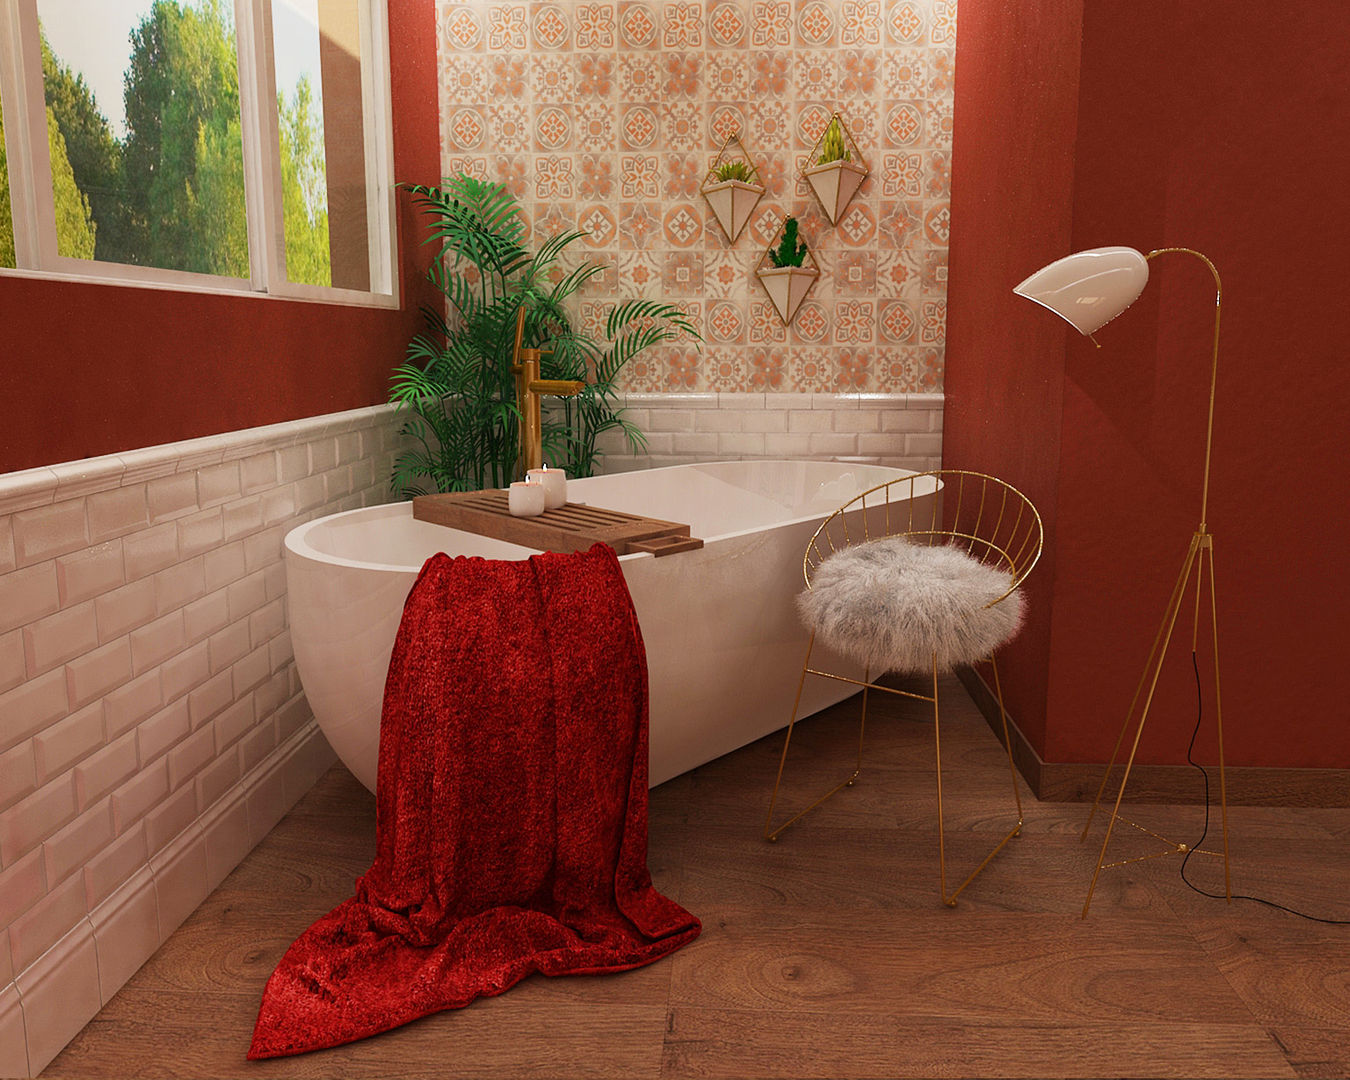 Ambientes 3D de casas de banho Smile Bath, Smile Bath S.A. Smile Bath S.A. Baños de estilo moderno